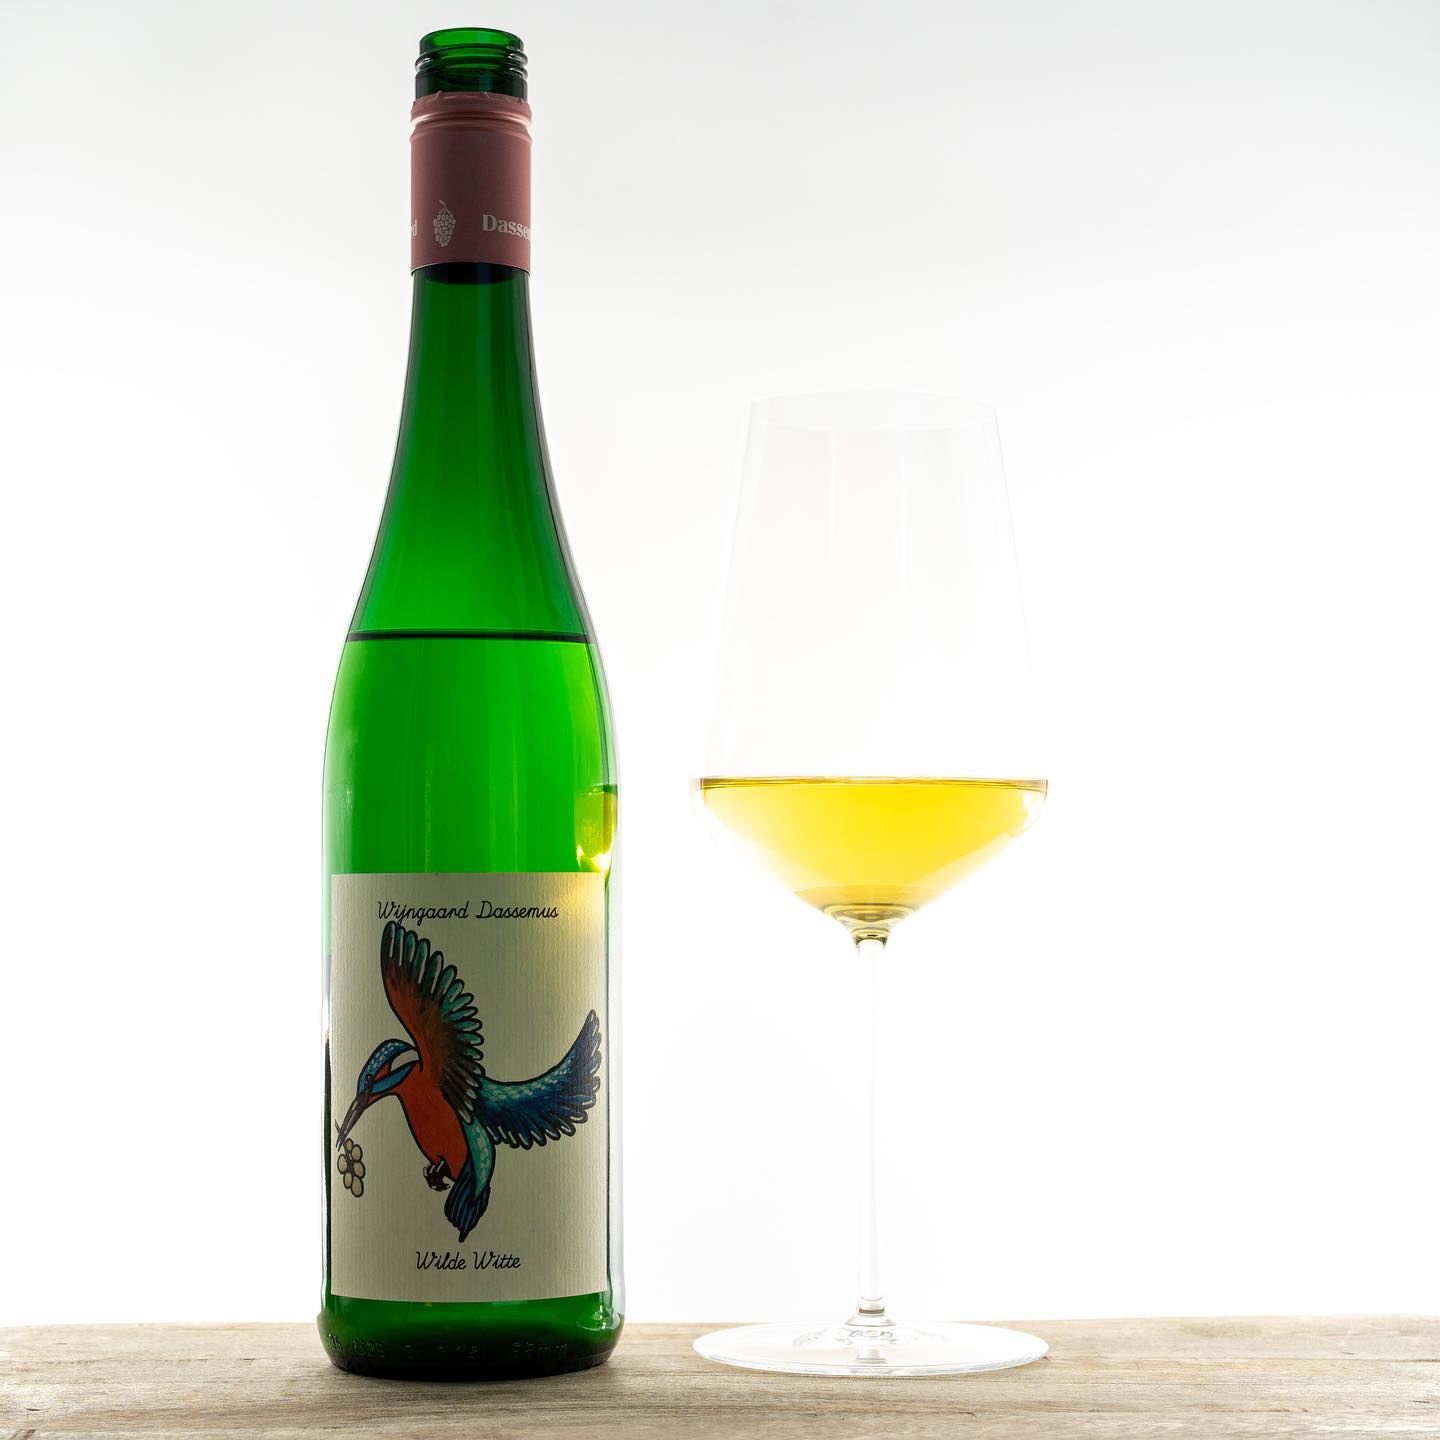 Wijngaard Dassemus, Wilde Witte 2020 @wijngaard_dassemus 

🍇 Solaris + Sauvignac + Johanniter

#wineoclock #winelover #wineoftheday #dutchwine #nederlandsewijn #natuurlijkewijn #naturalwine #vinnaturel #johanniter #solaris #sauvignac #wijn #vin #wine